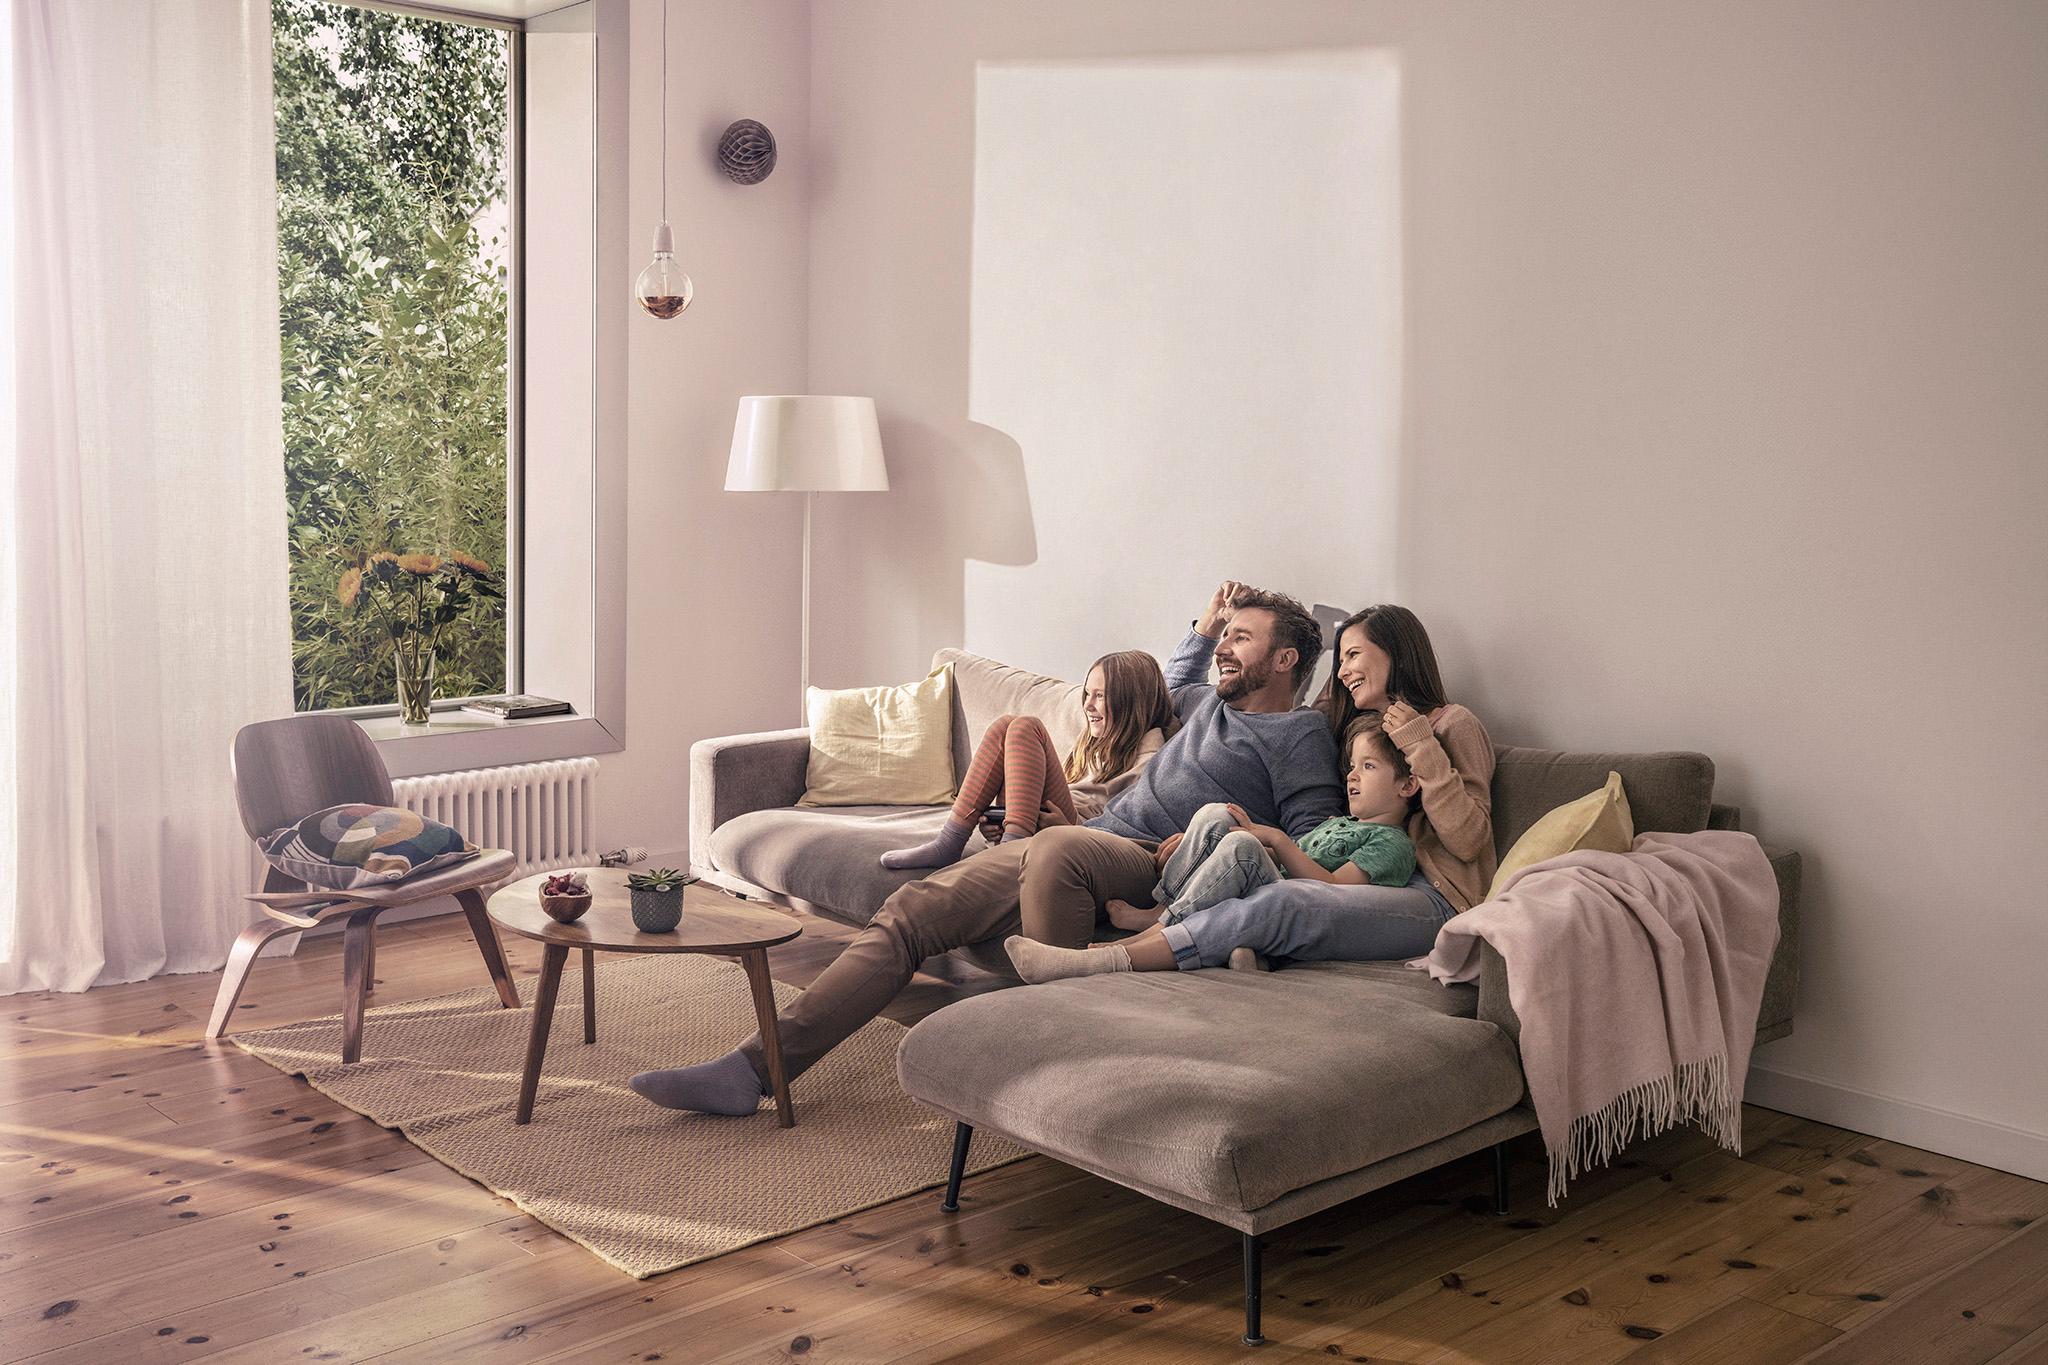 Familienzeit auf dem Sofa - Stromkosten steigen ohne zolar